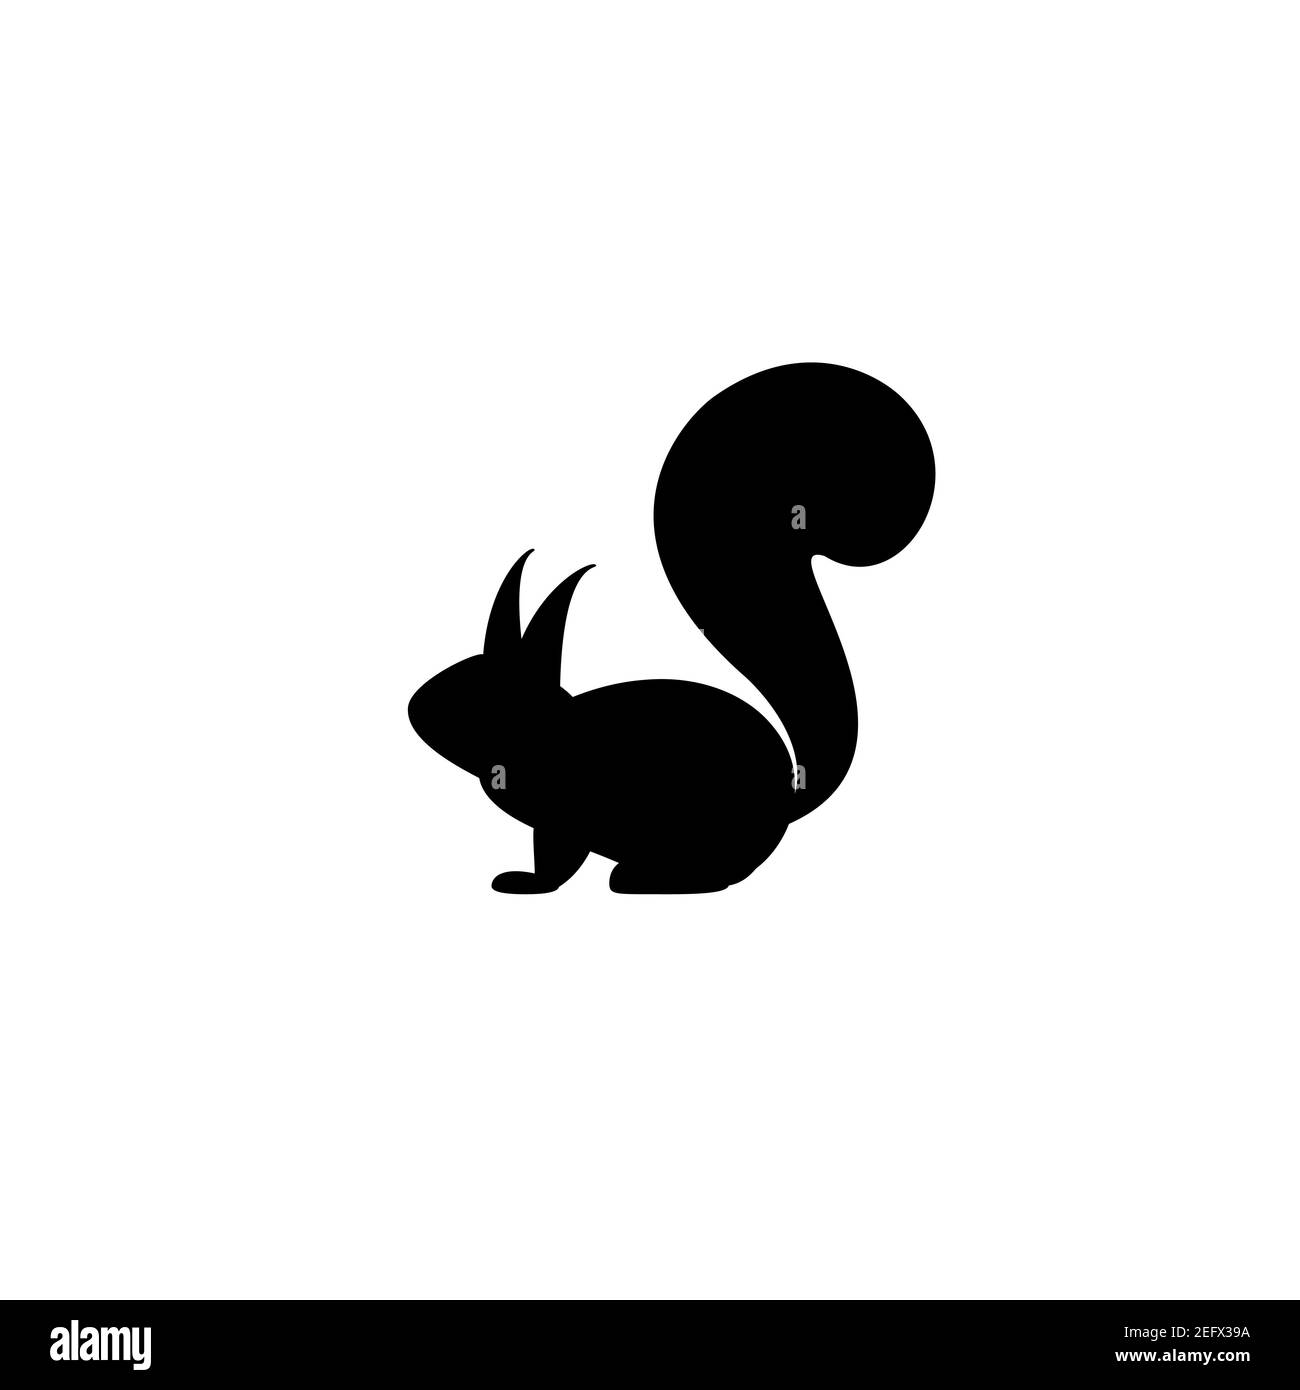 simple squirrel silhouette